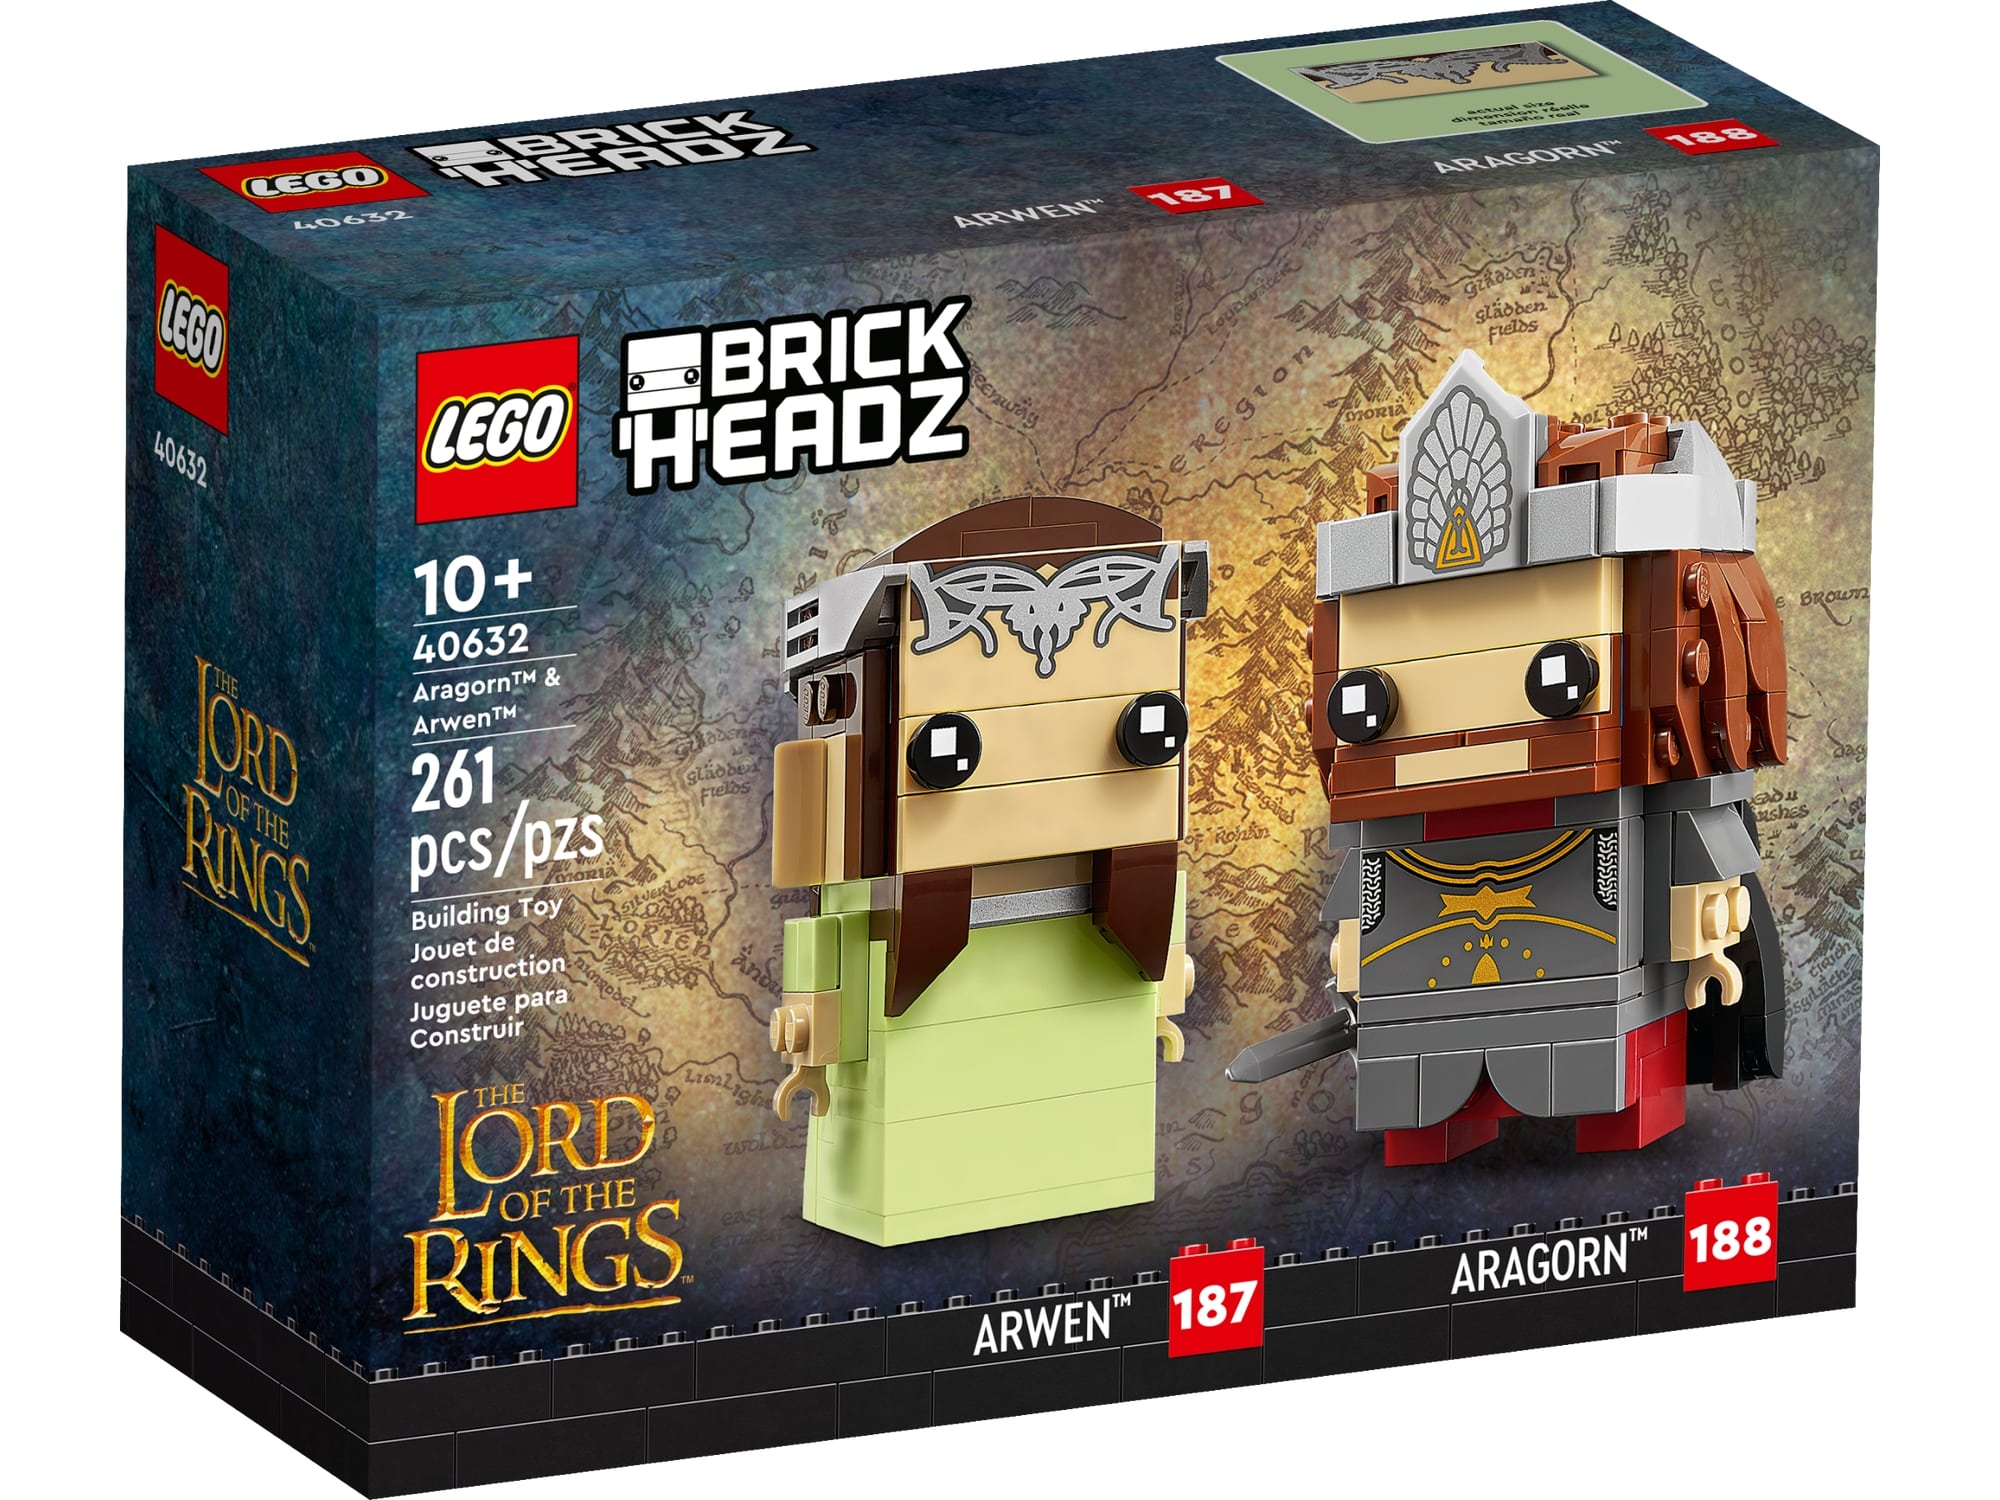 LEGO Brickheadz 40632 Aragorn Und Arwen 3